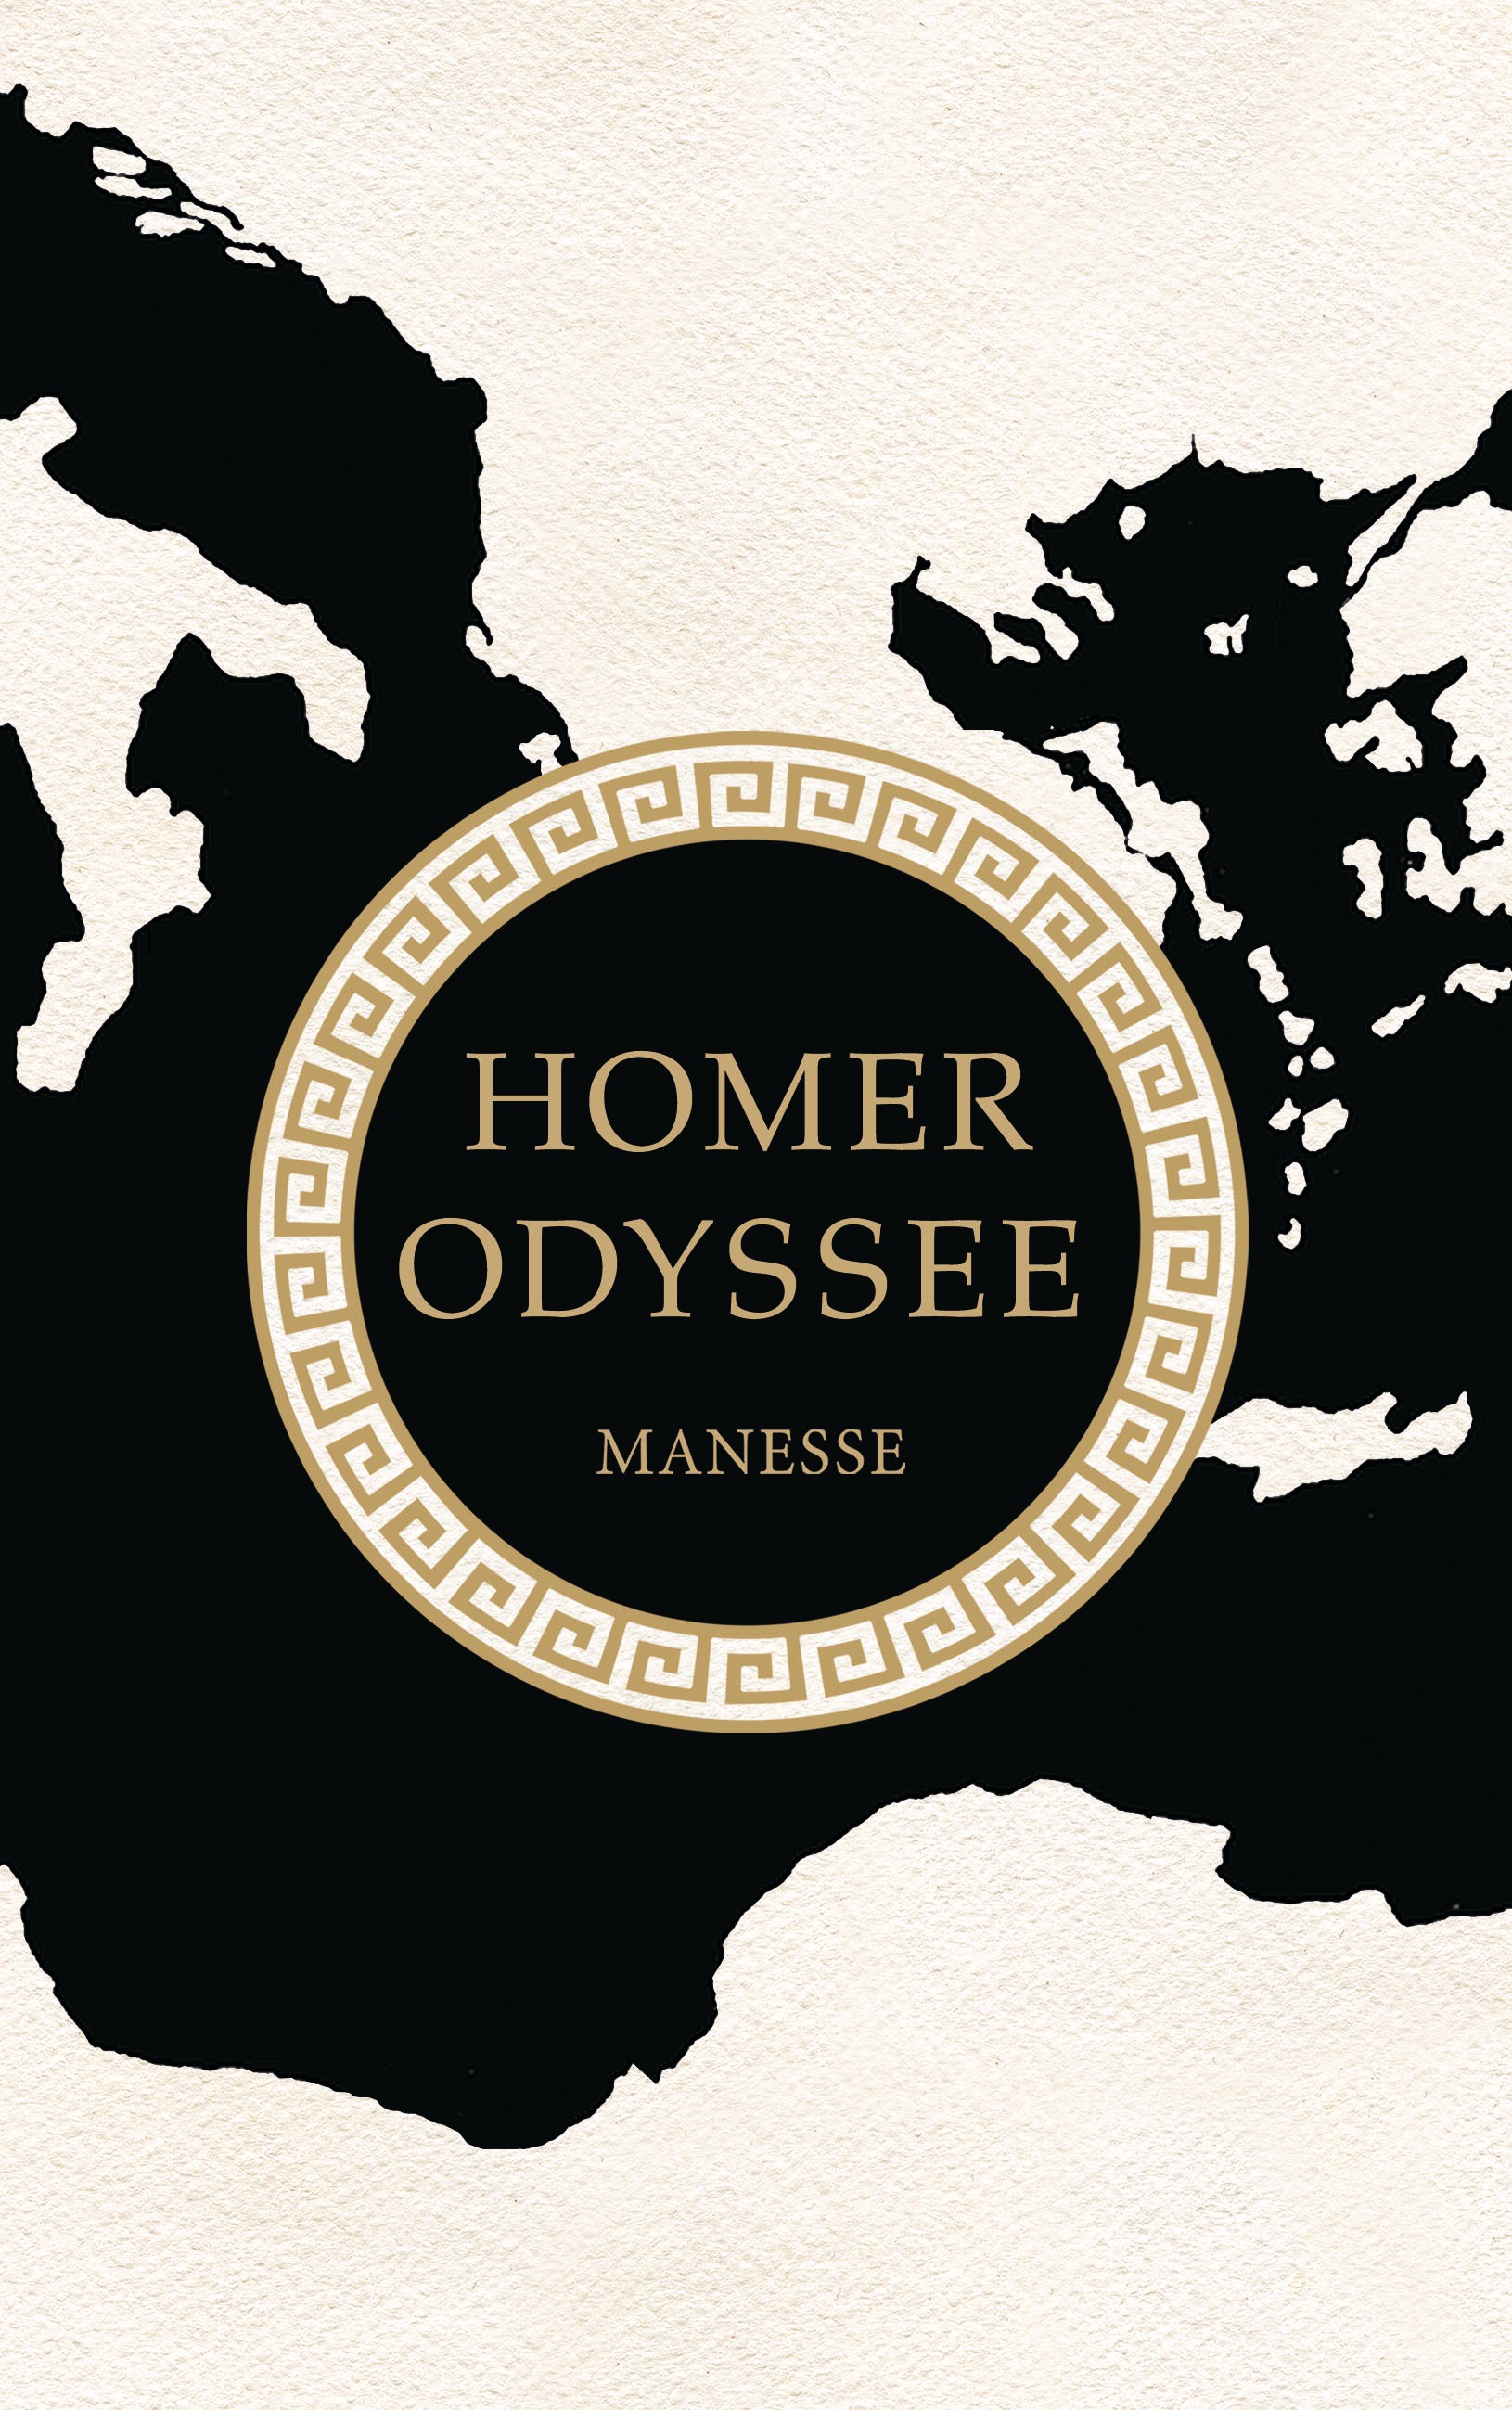 Odyssee von Homer